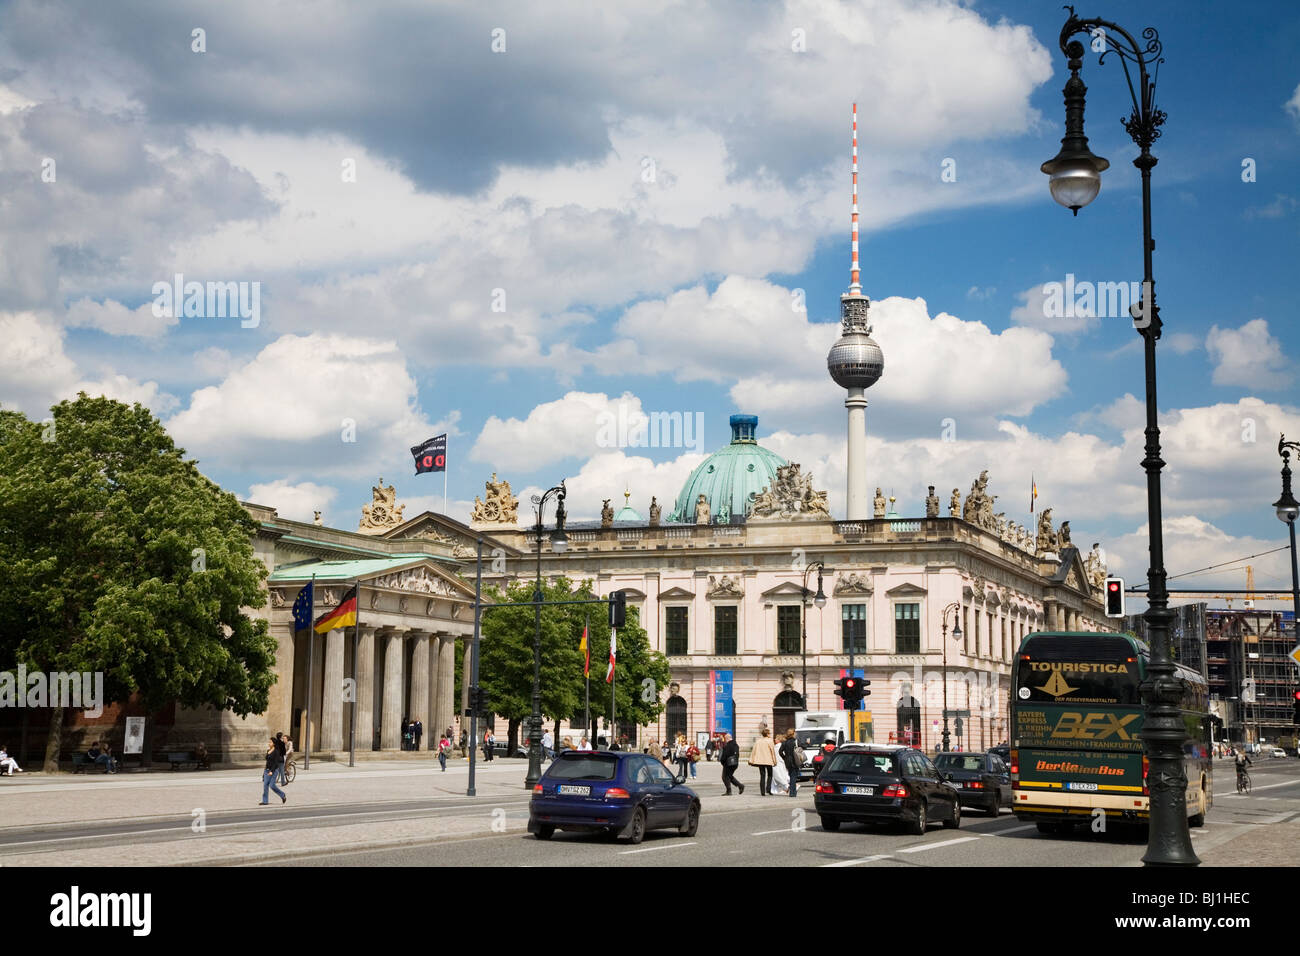 El bulevar Unter den Linden y la torre de televisión. Berlín, Alemania Foto de stock